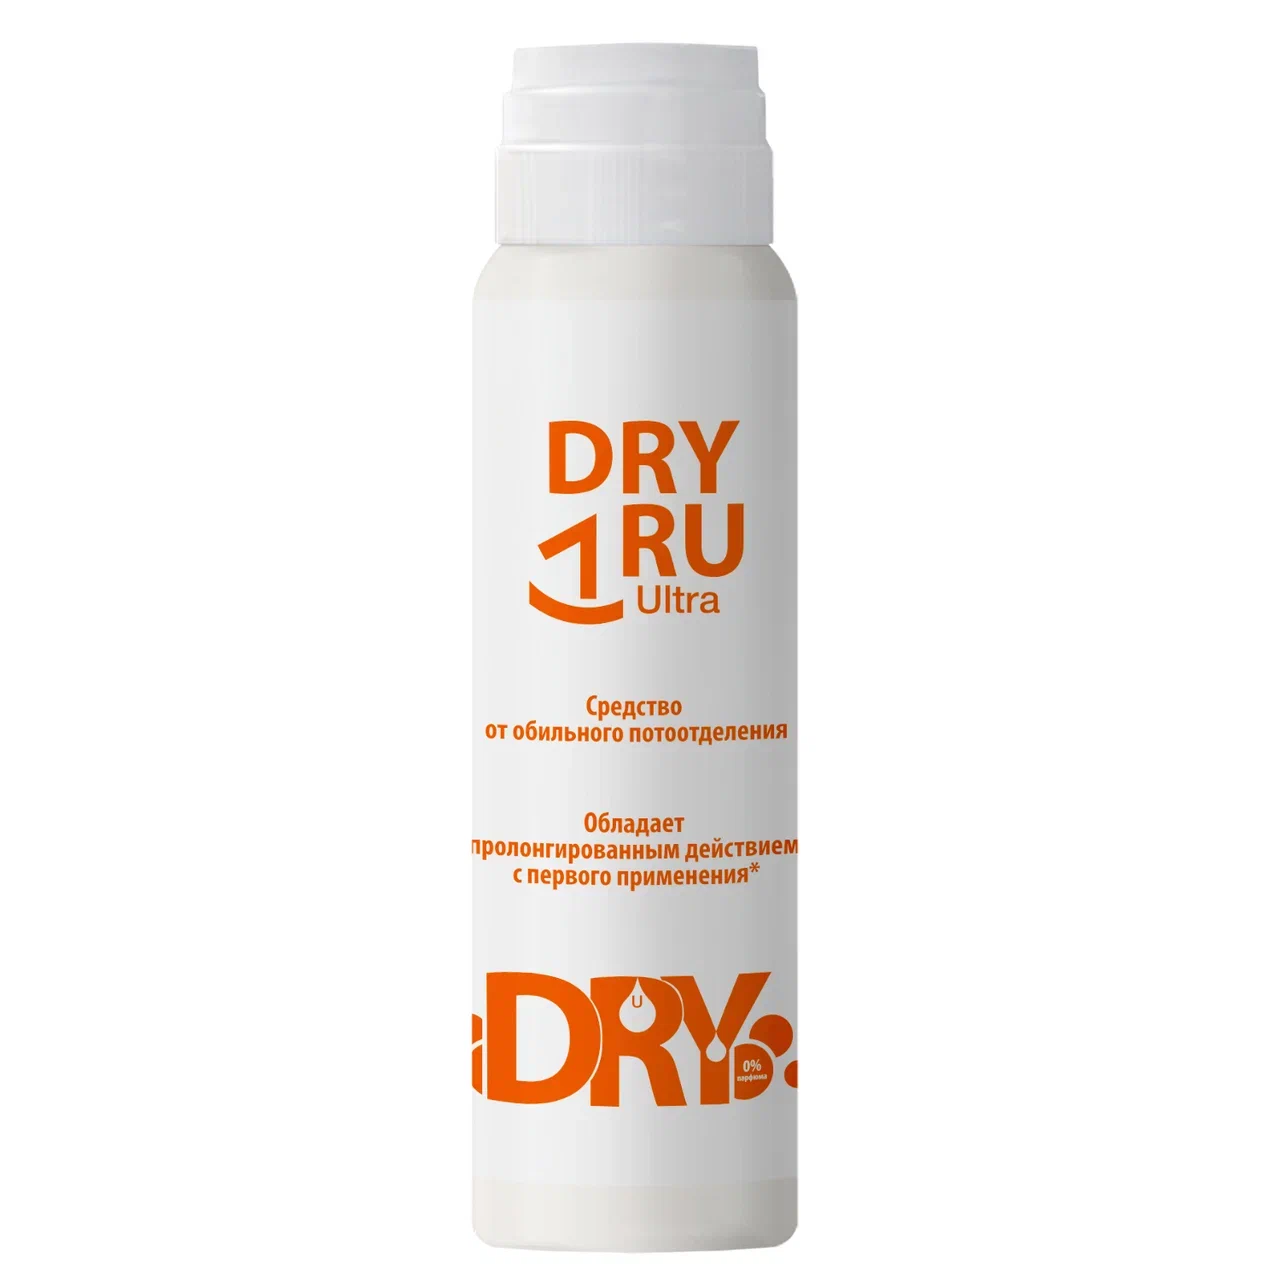 Дезодорант DRY RU Ультра от обильного потоотделения, с пролонгированным действием 50 мл vitateka дезодорант драй форте ролик от обильного потоотделения 20 % 50